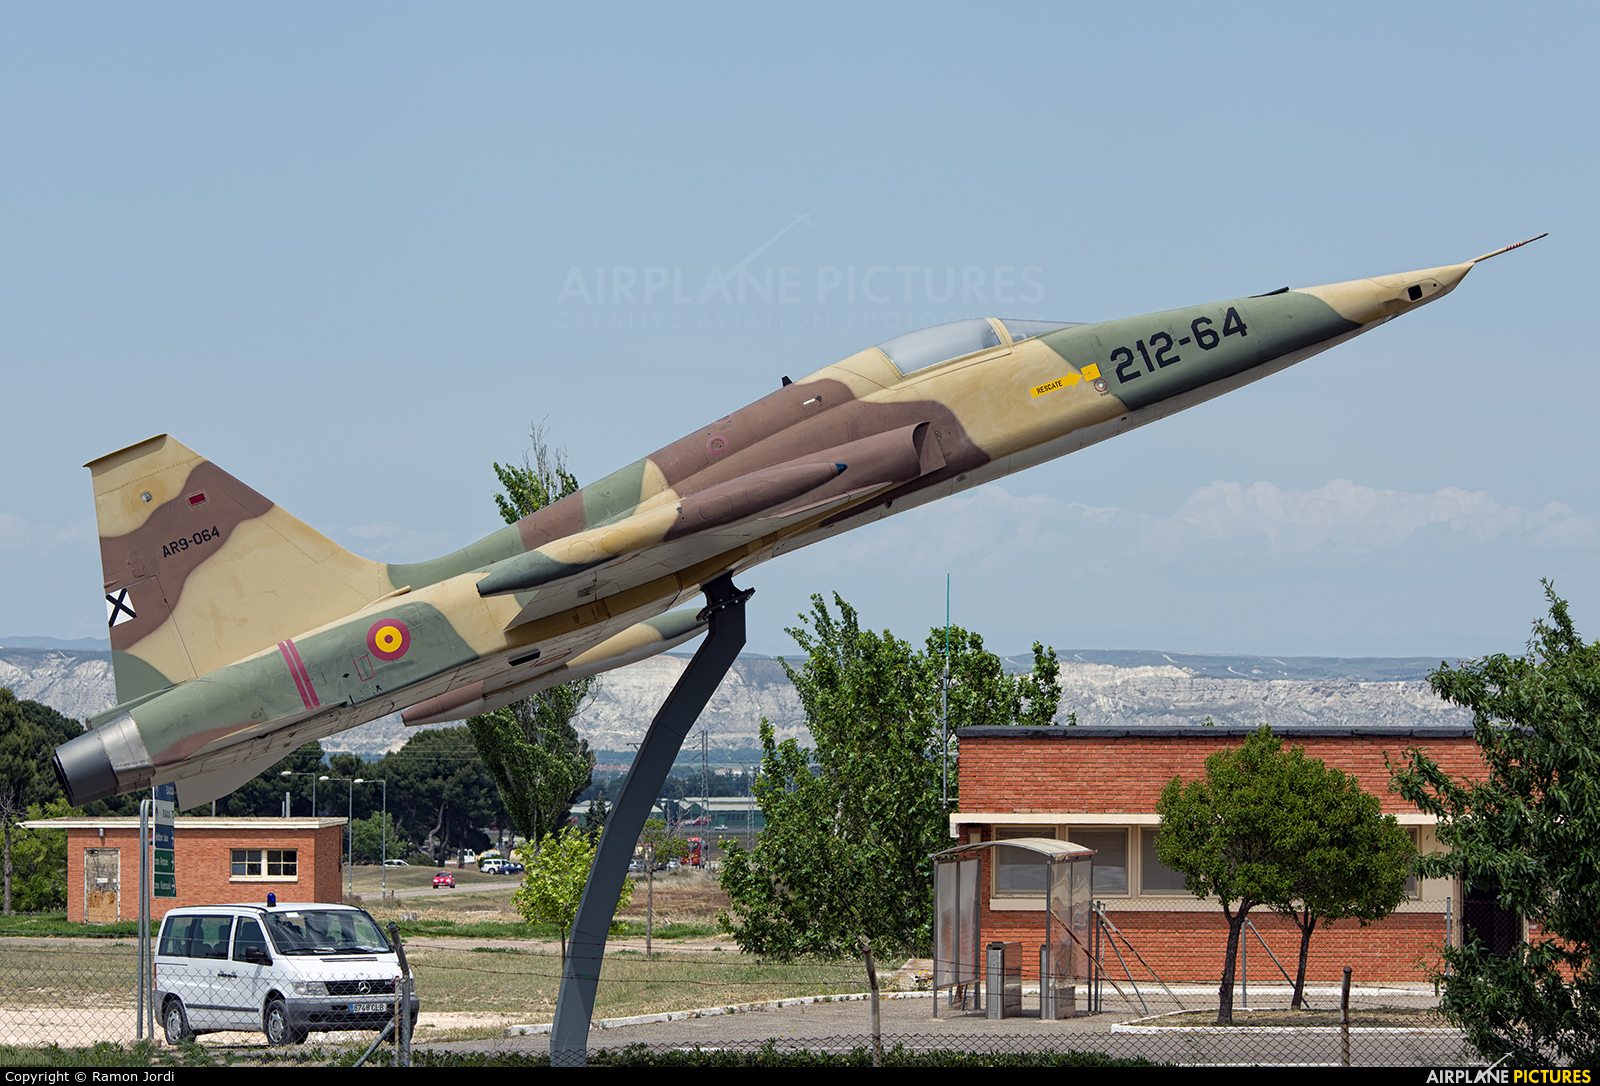 Spain - Air Force AR.9-064 aircraft at Zaragoza